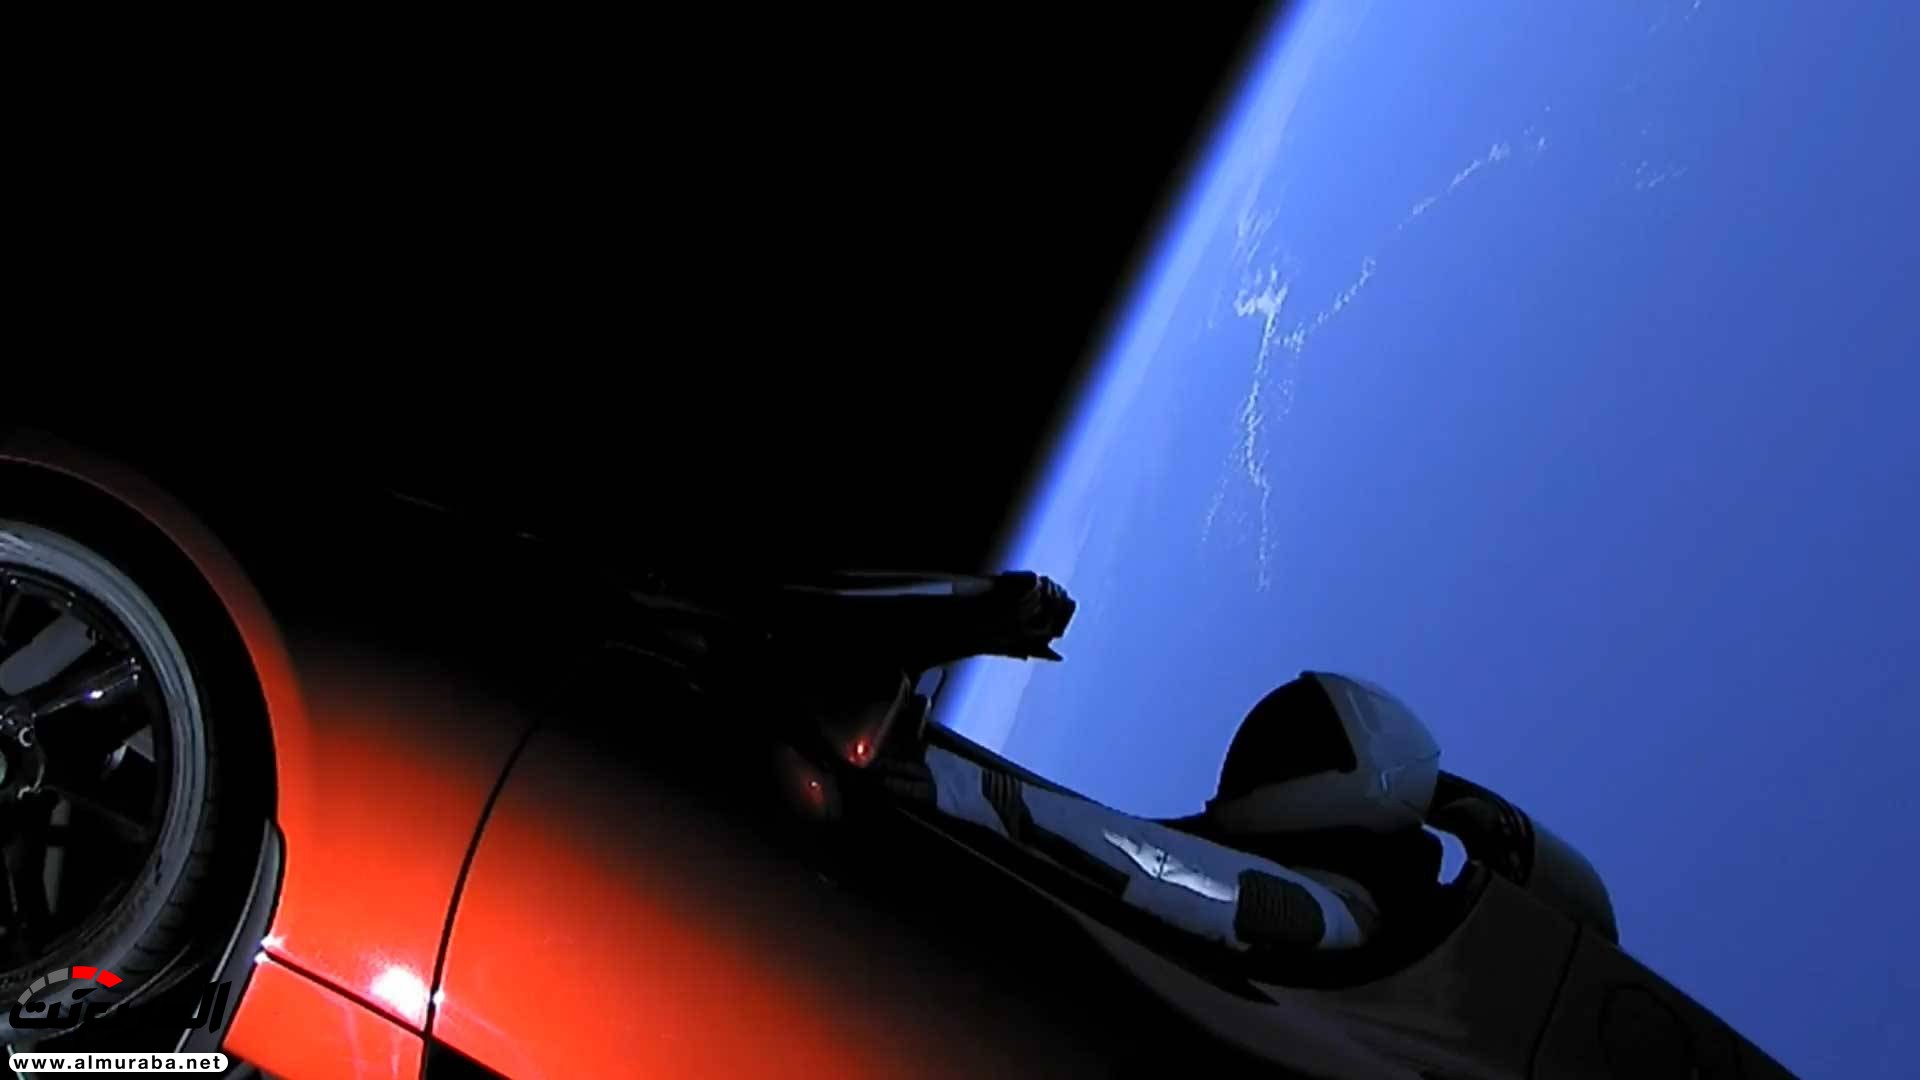 "بالفيديو والصور" إيلون ماسك يطلق تيسلا رودستر إلى المريخ في أقوى صاروخ بالعالم 39